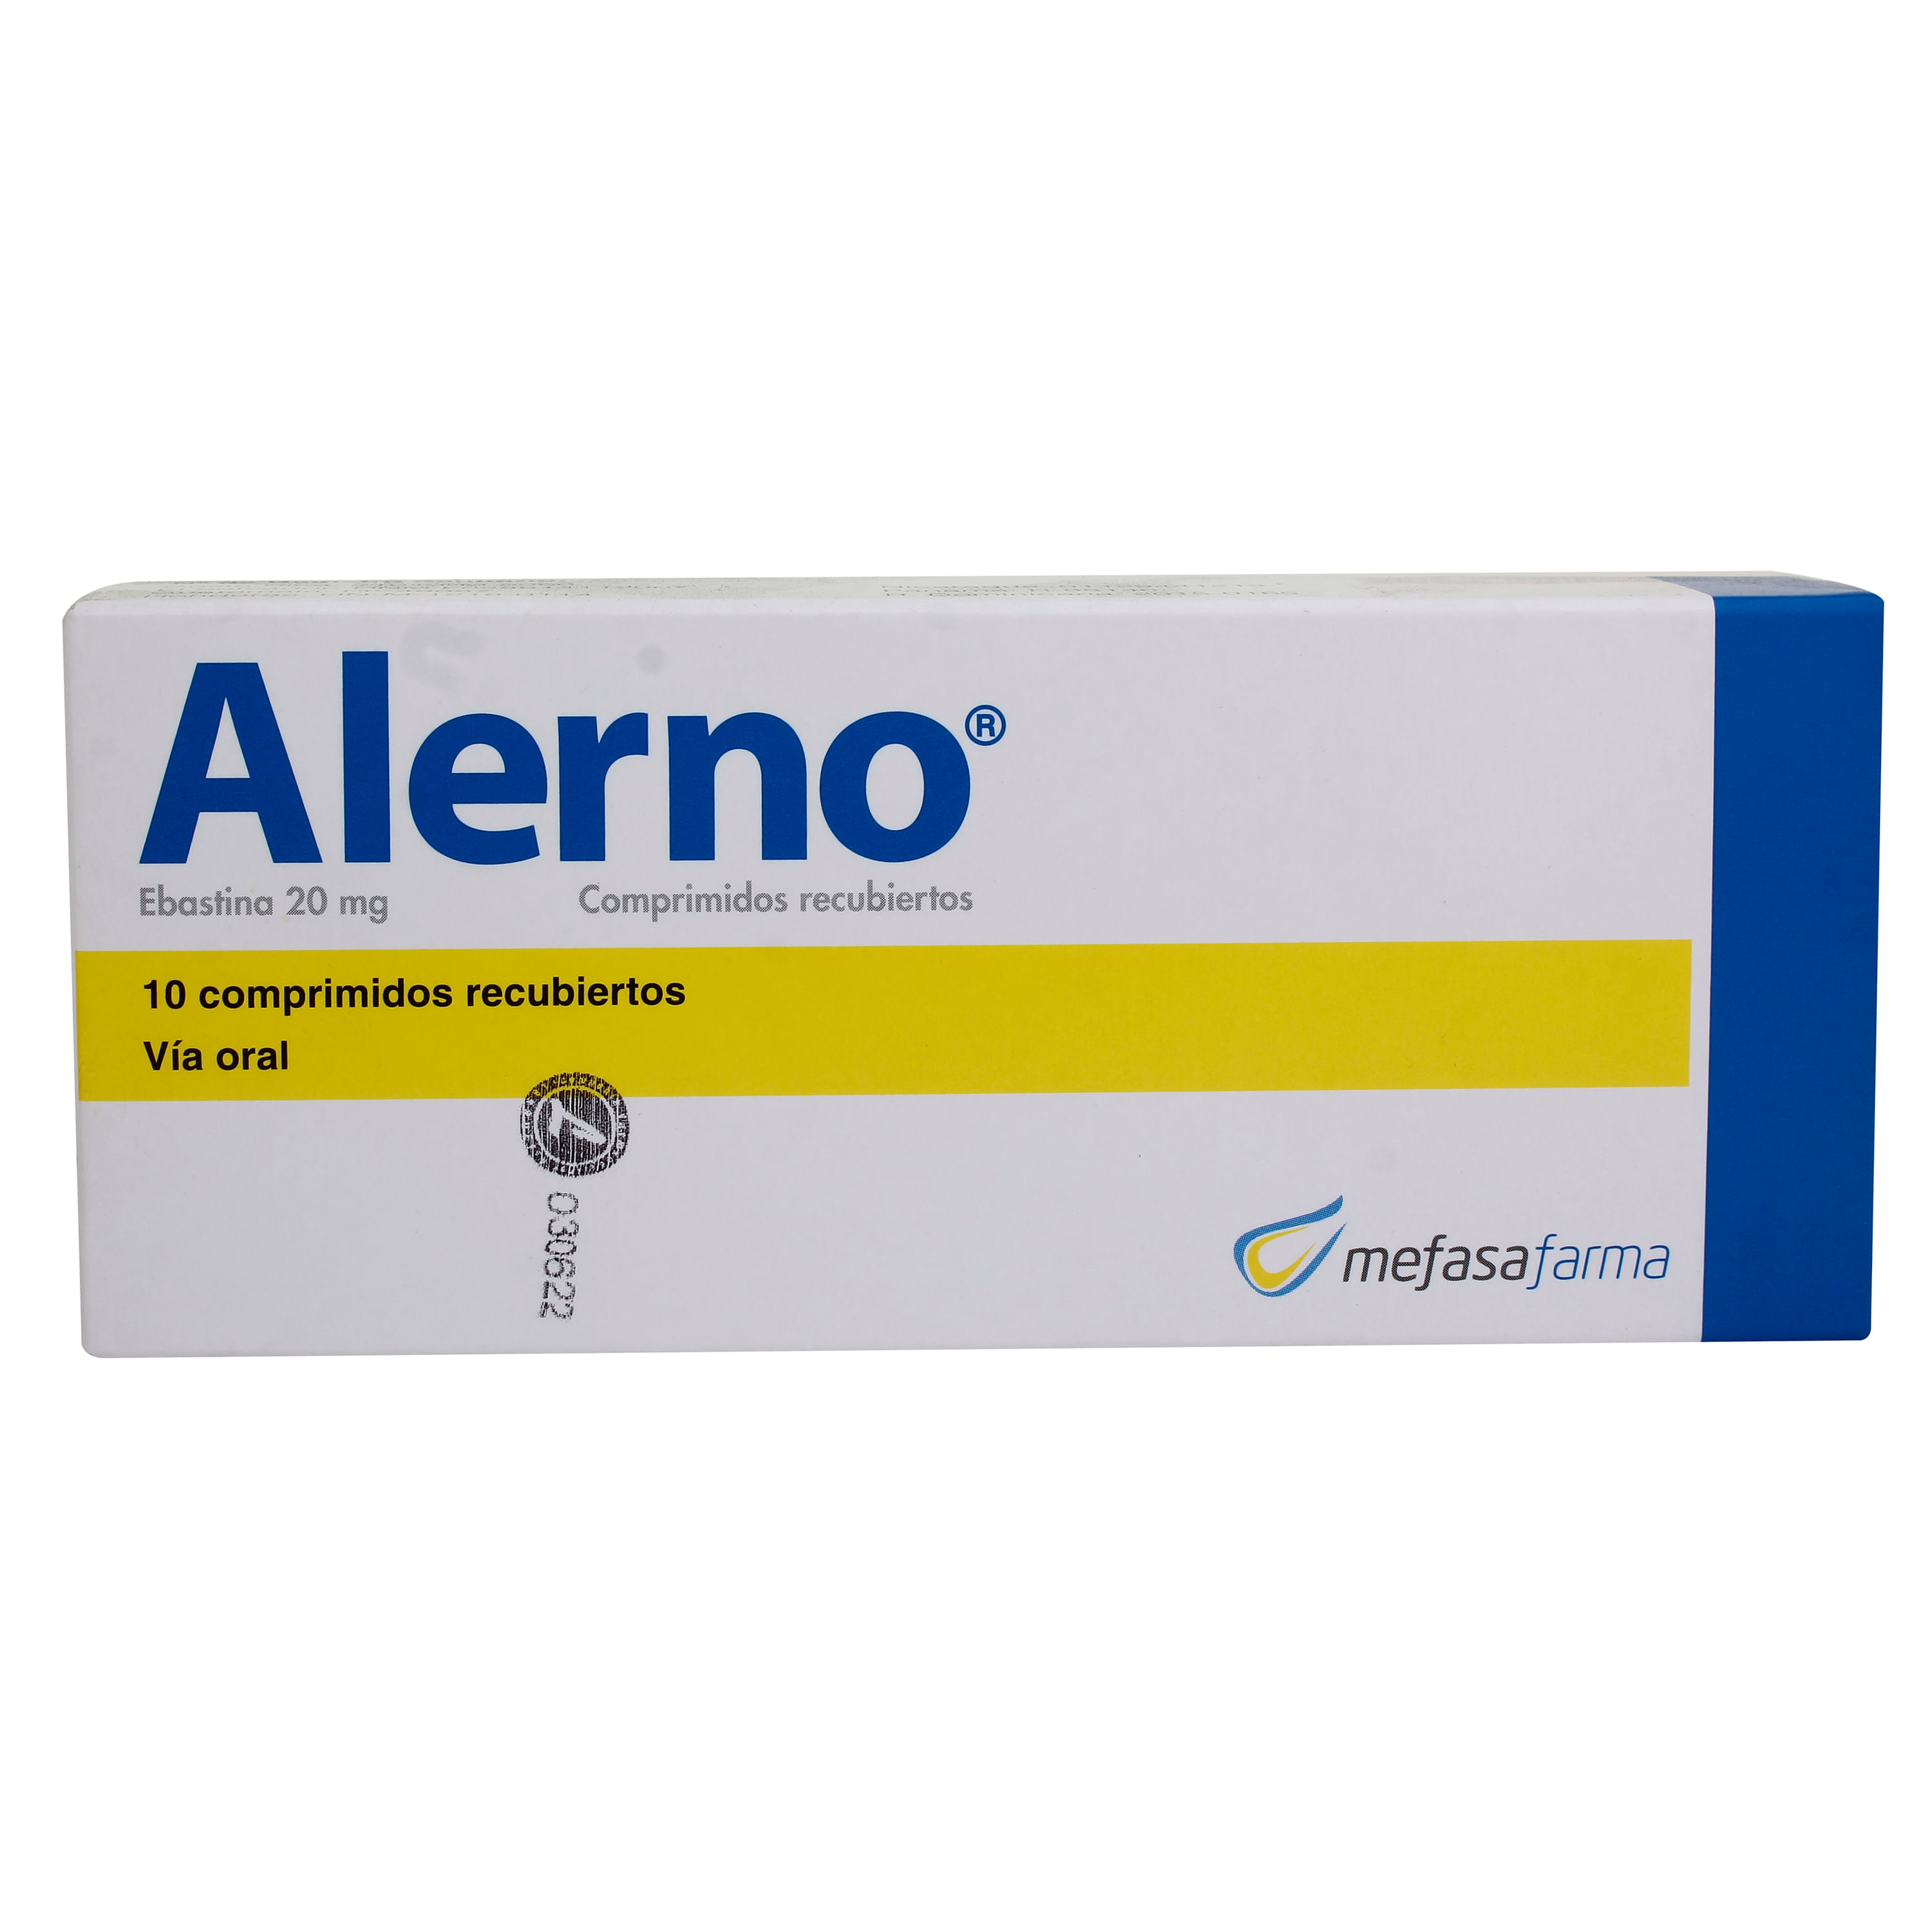 S-Alerno-20-Mg-10-Tabletas-1-30183